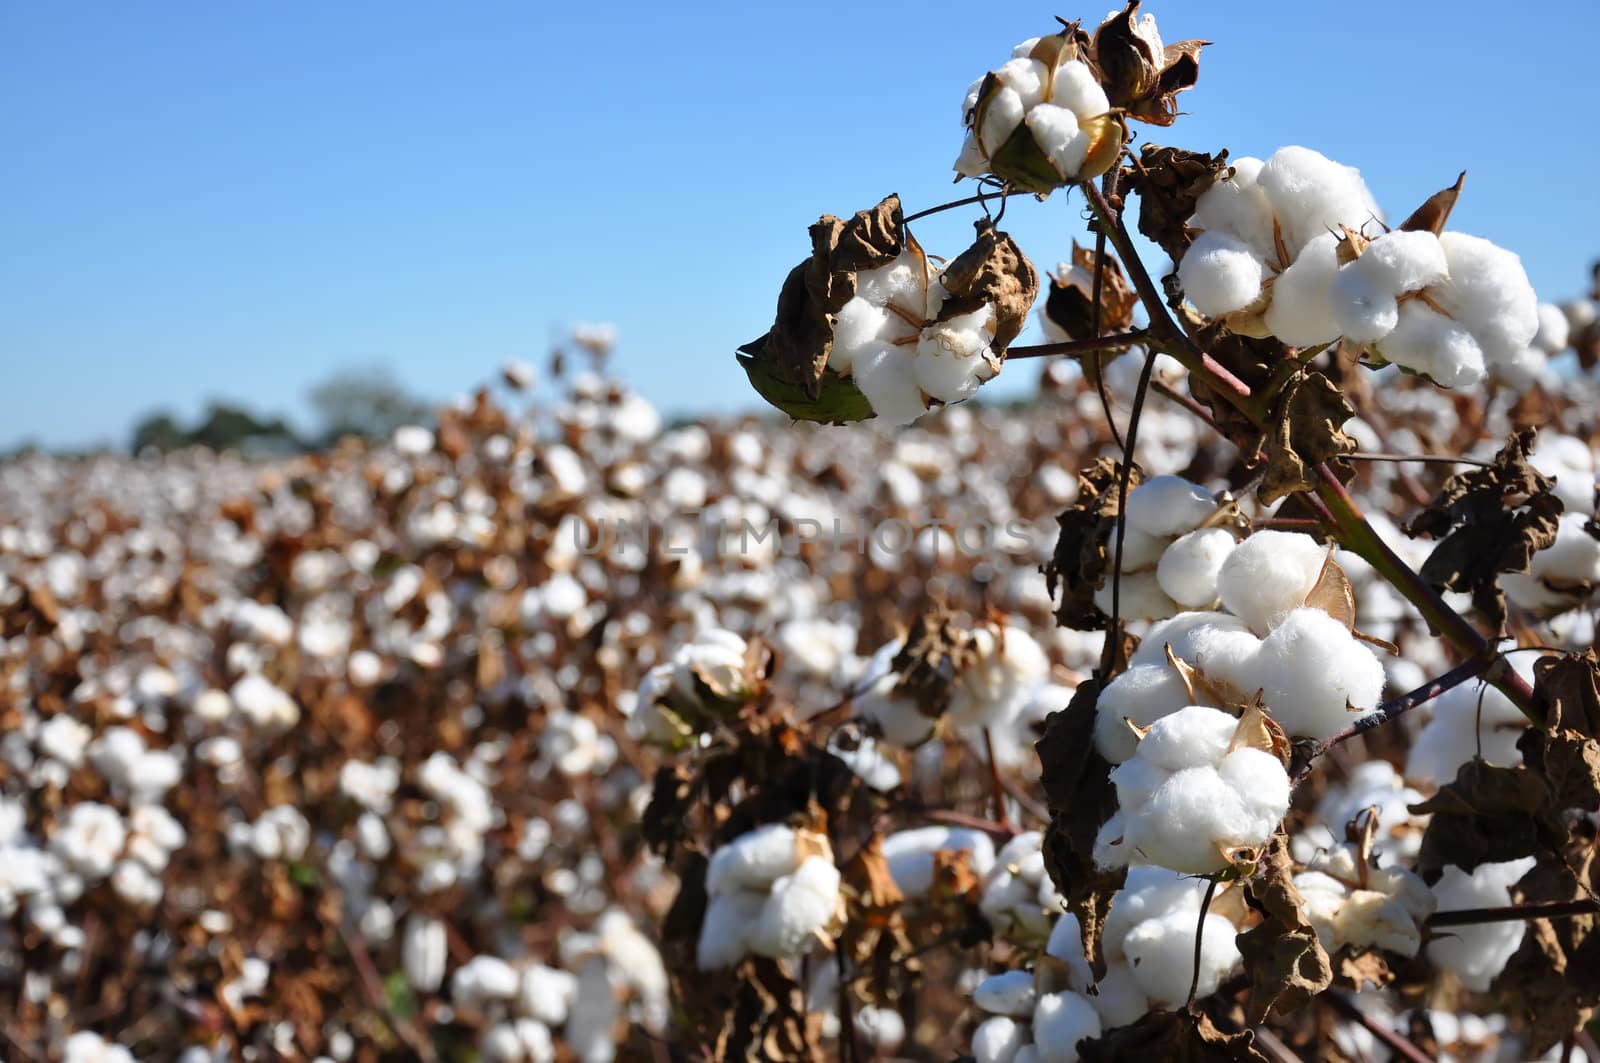 Cotton in field on farm in Alabama. 